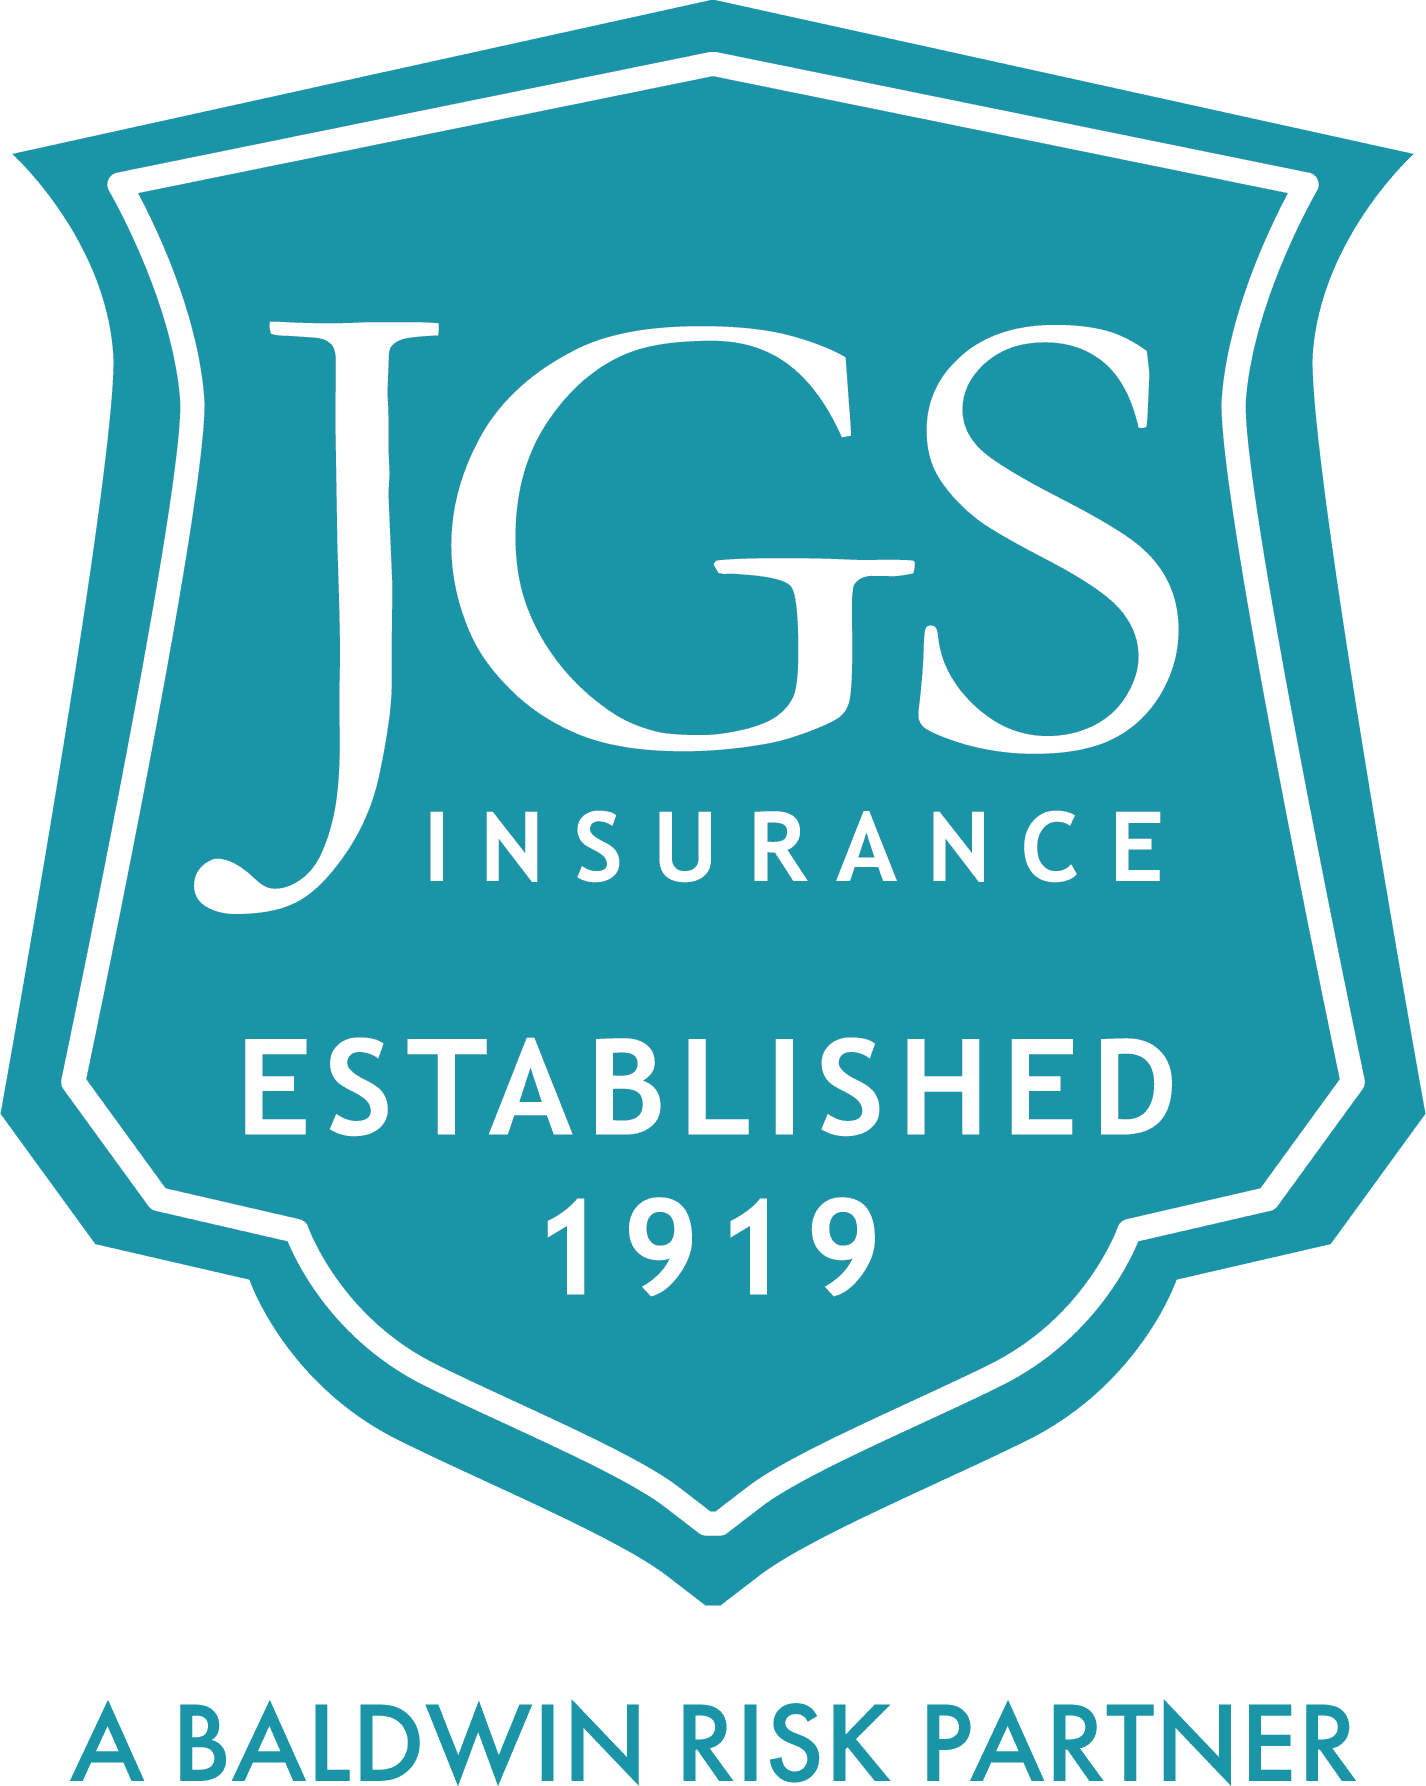 JGS A Baldwin Risk Partner Logo